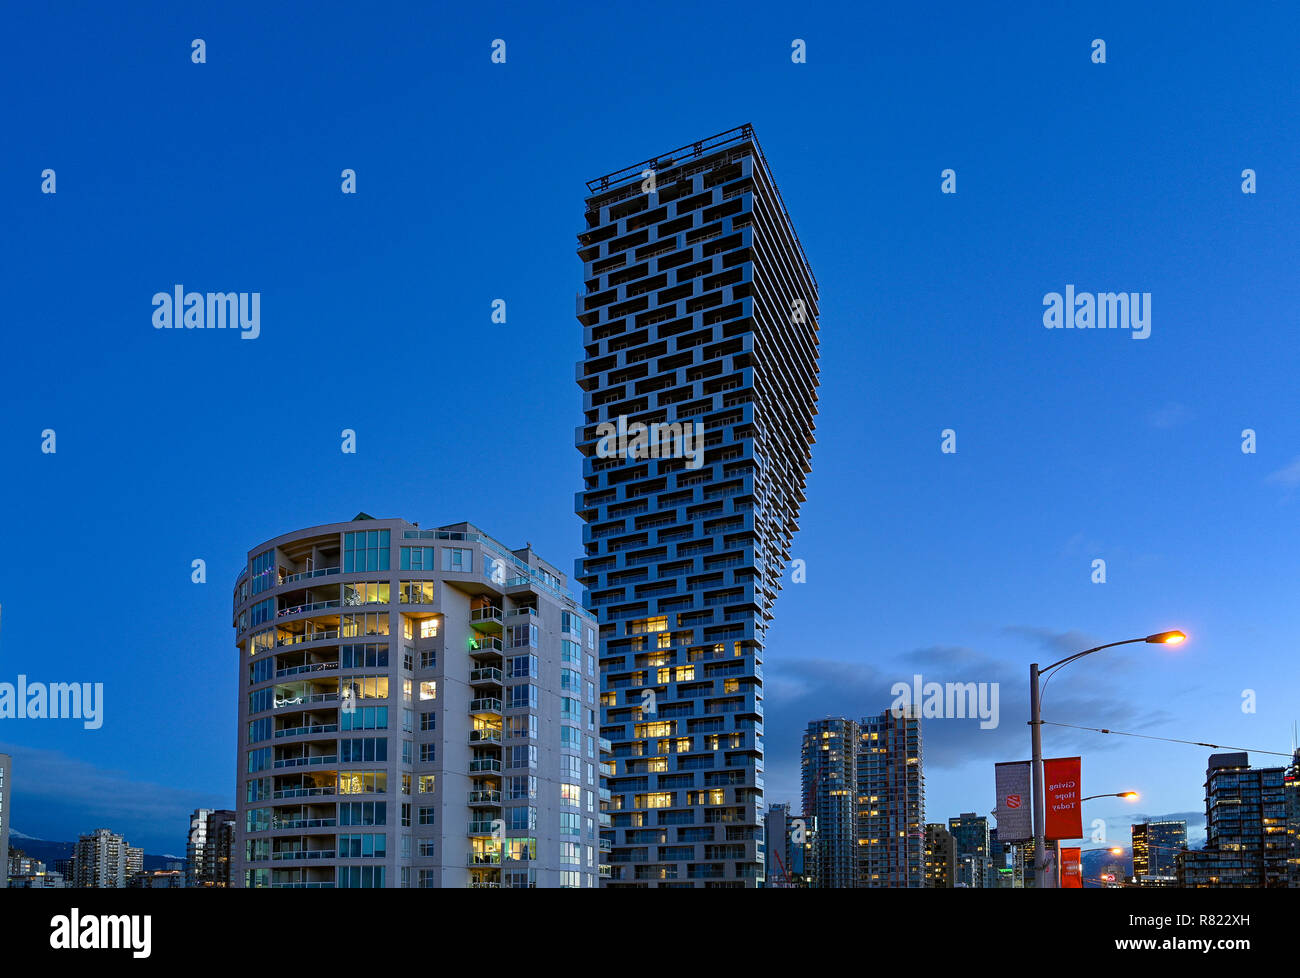 Ungewöhnlich Hohes Condo-Gebäude, Vancouver Haus, Bjarke Ingels Group Architekten, Vancouver, British Columbia, Kanada. Stockfoto